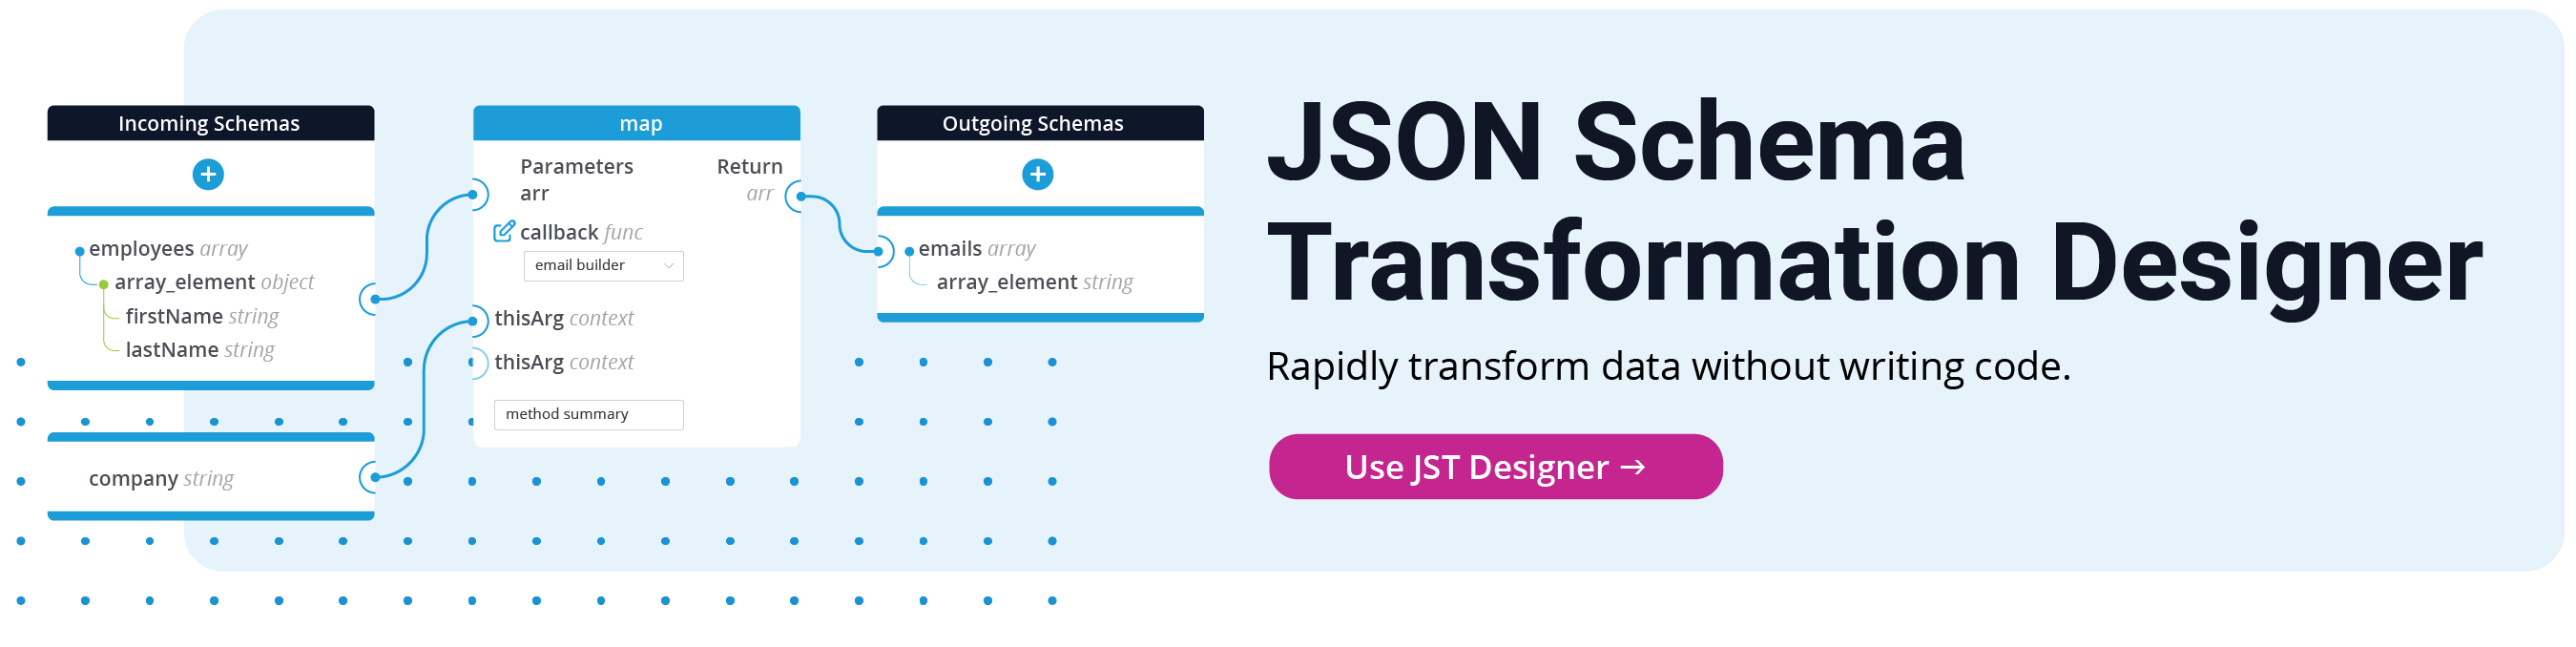 JSON Schema Transformationn